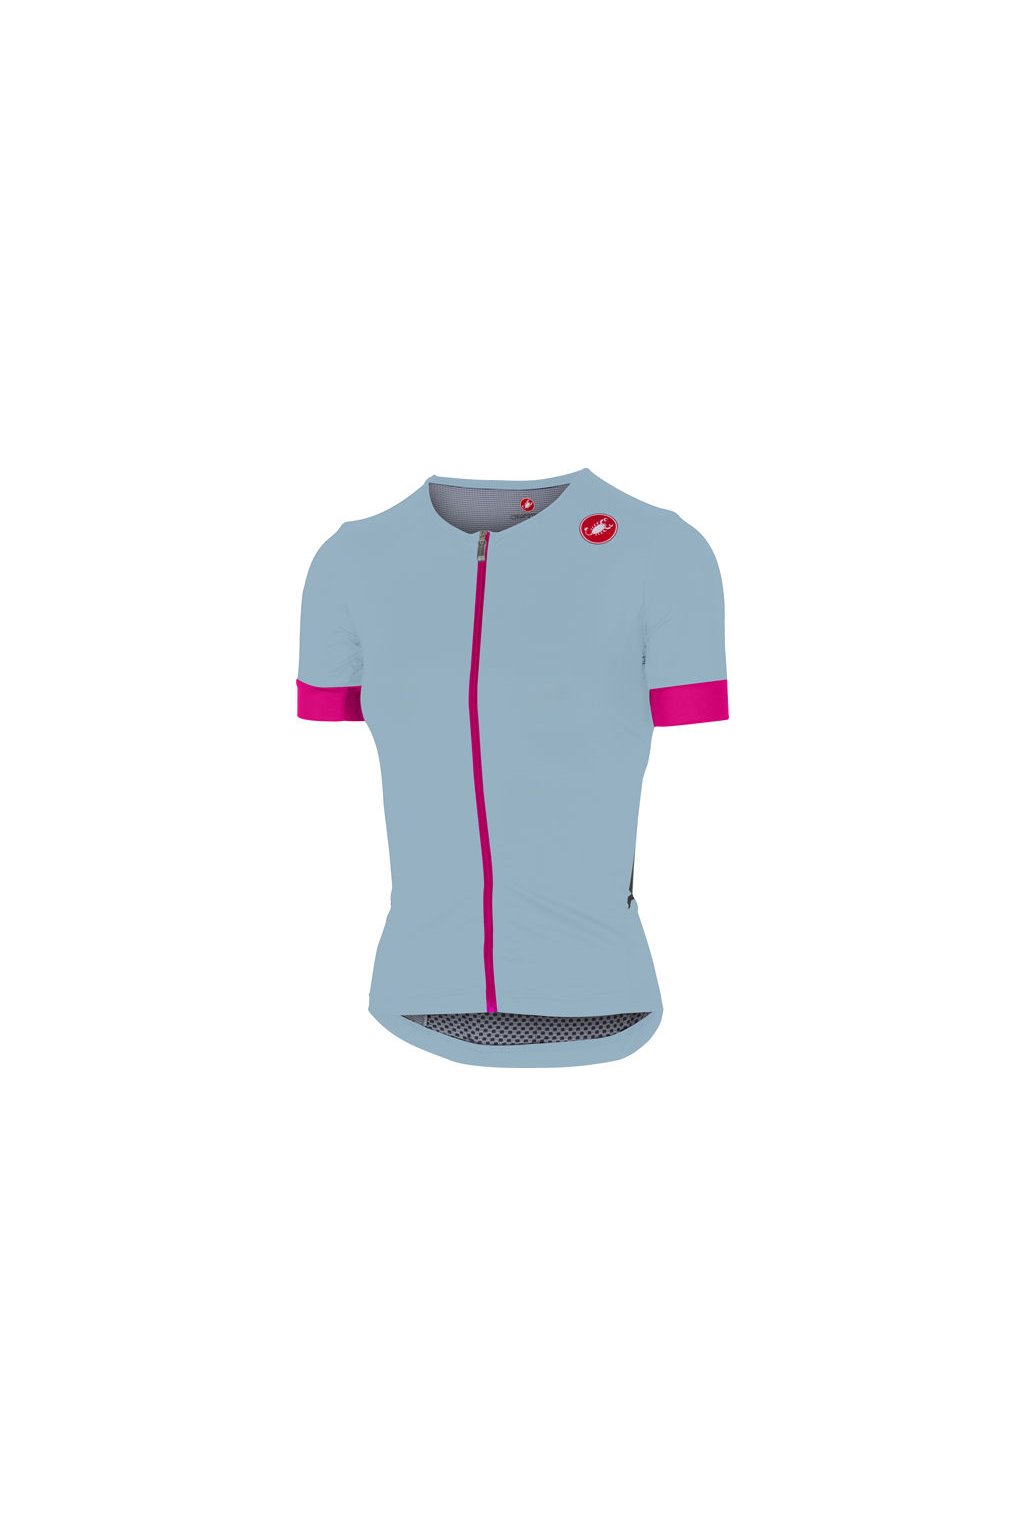 Dámský triatlonový dres CASTELLI Free Speed Race, pale blue/pink